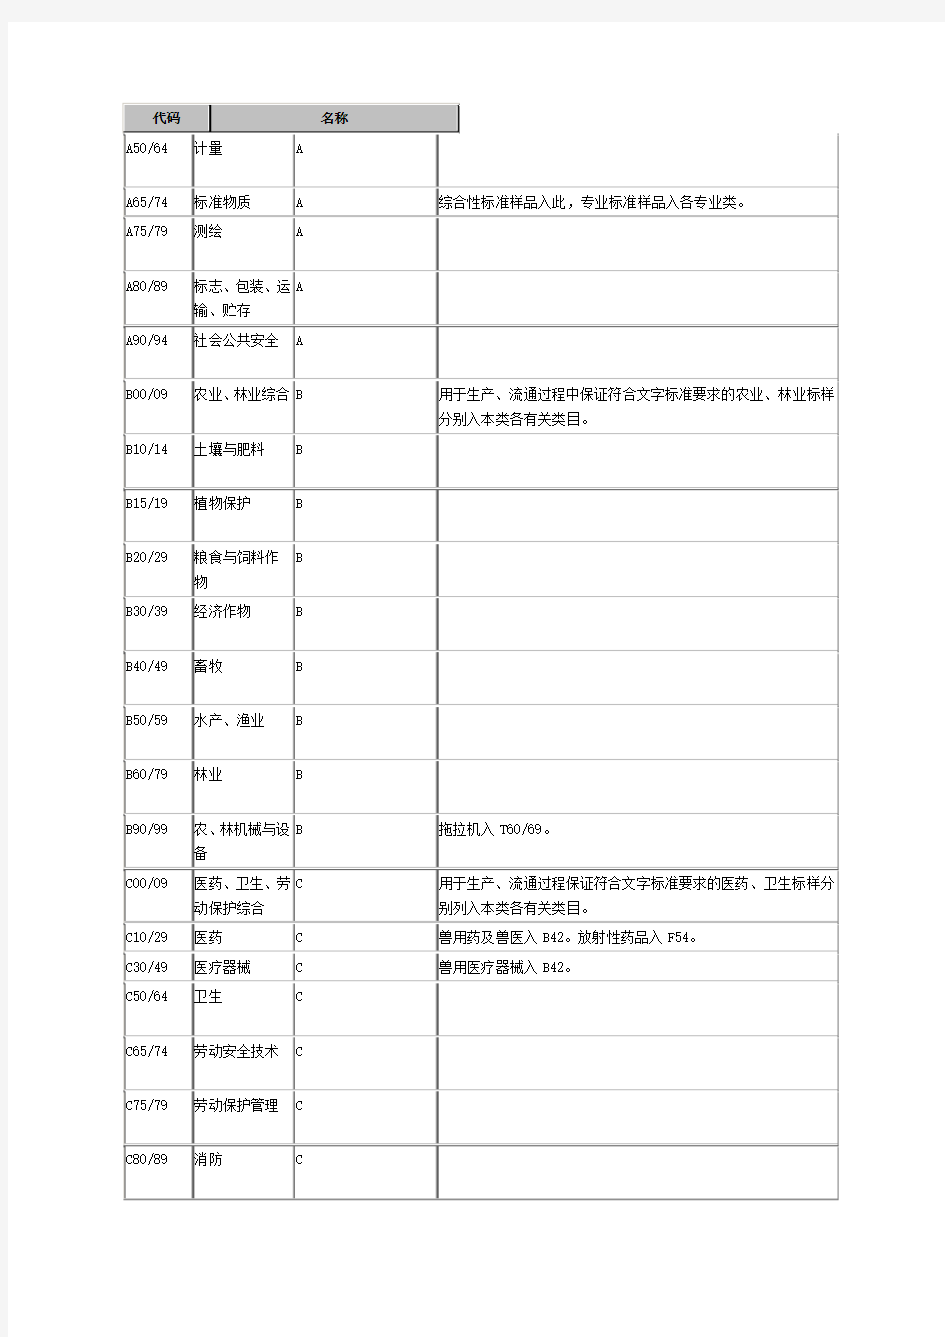 中国标准文献分类法 (1)